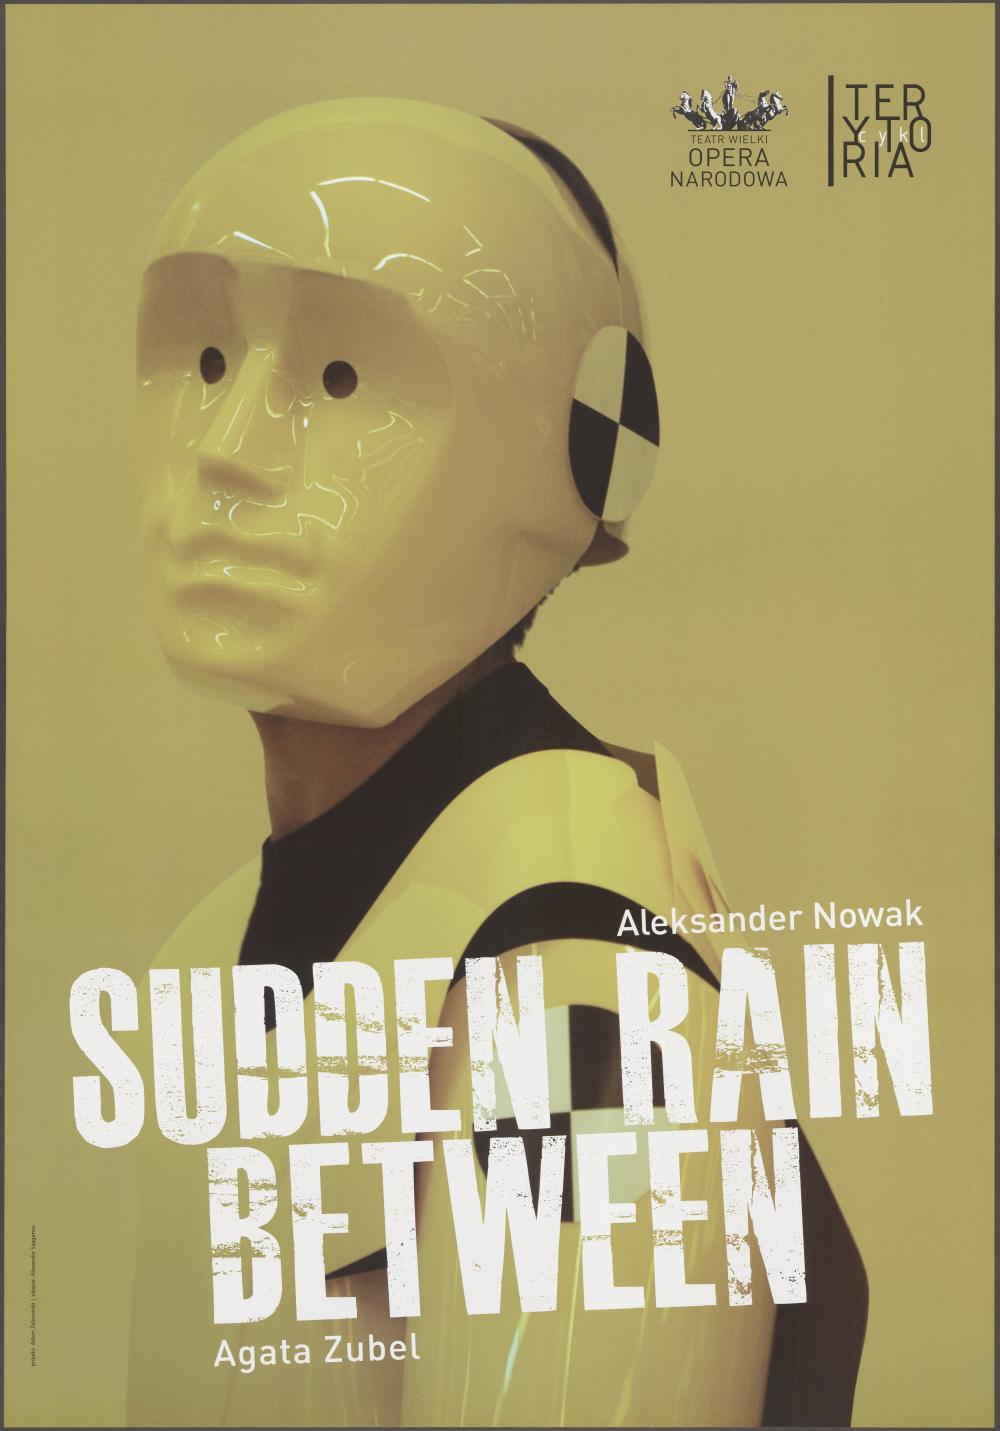 Plakat „Sudden Rain” Aleksander Nowak, ”Between” Agata Zubel 13-05-2010